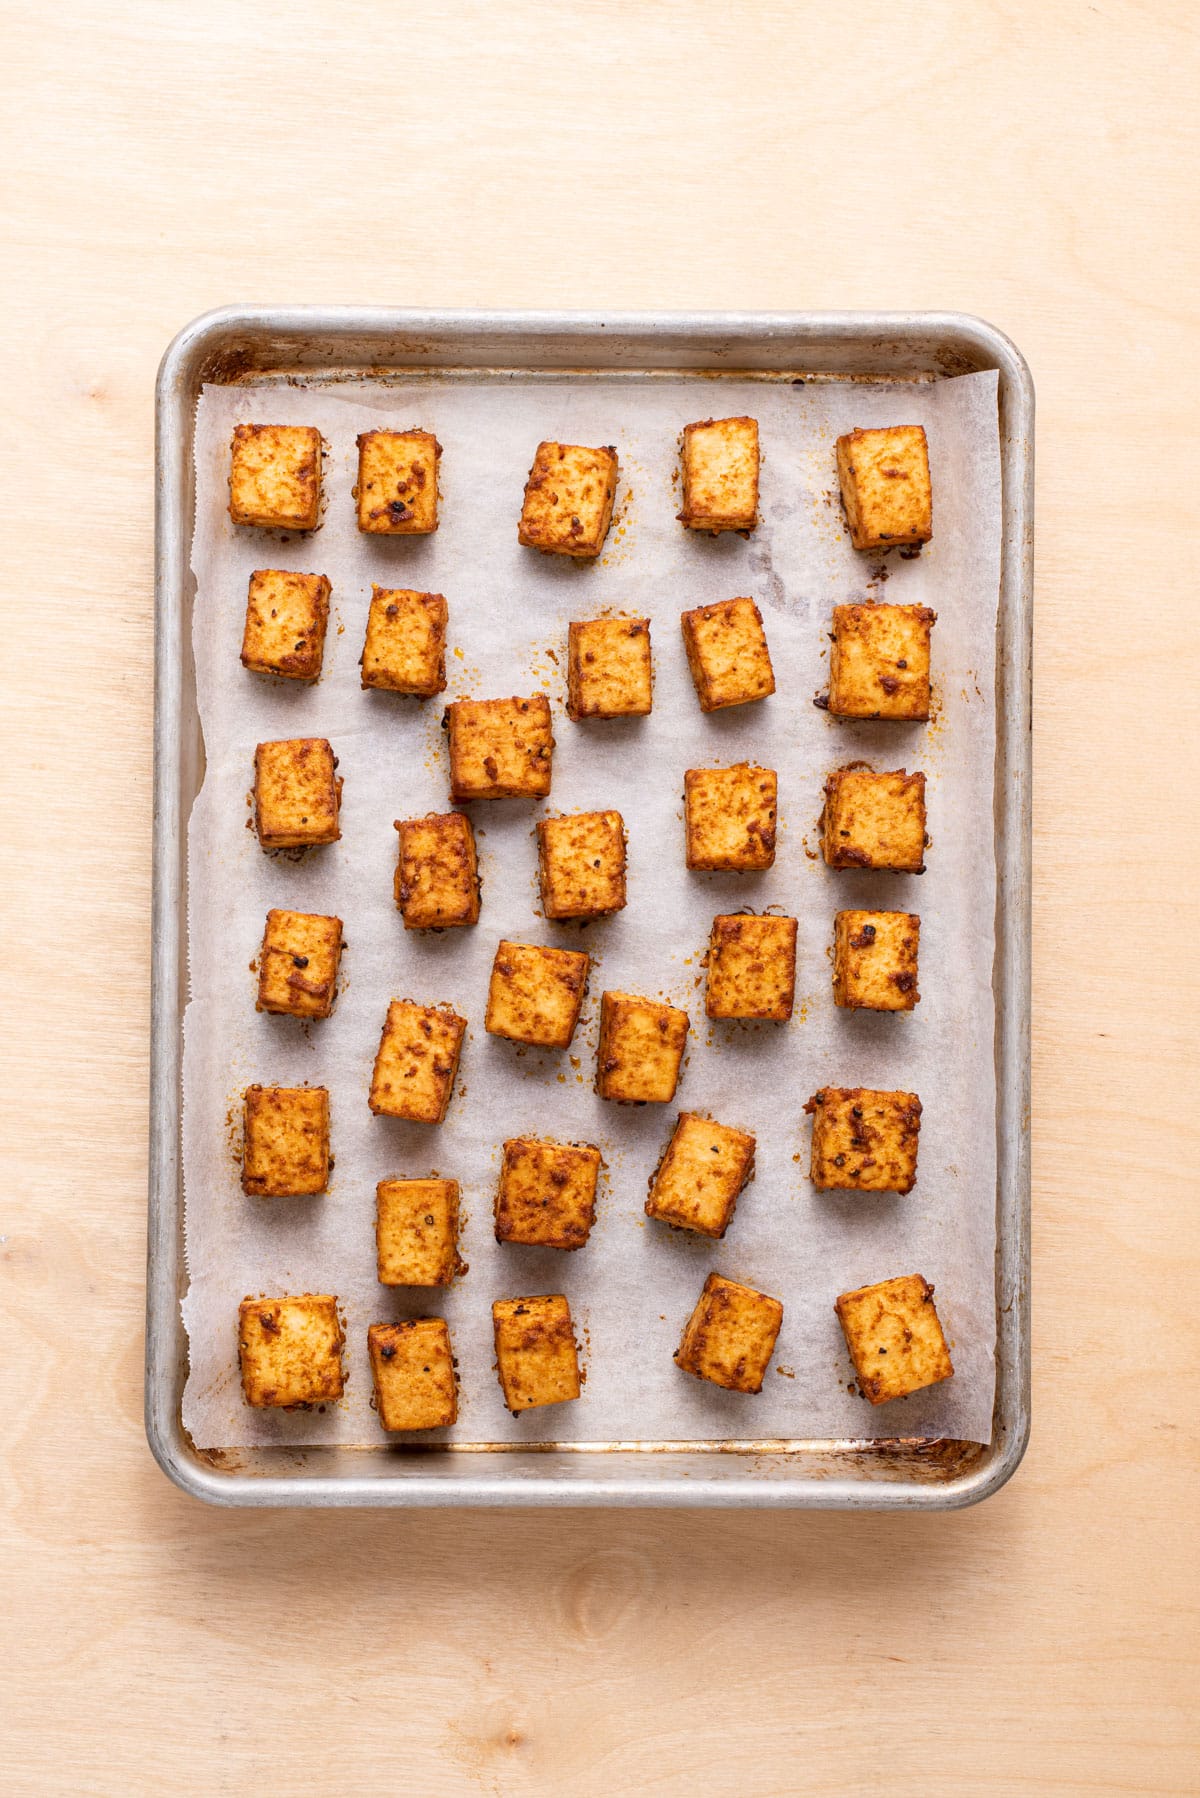 Marinated baked tofu cubes on a baking sheet.